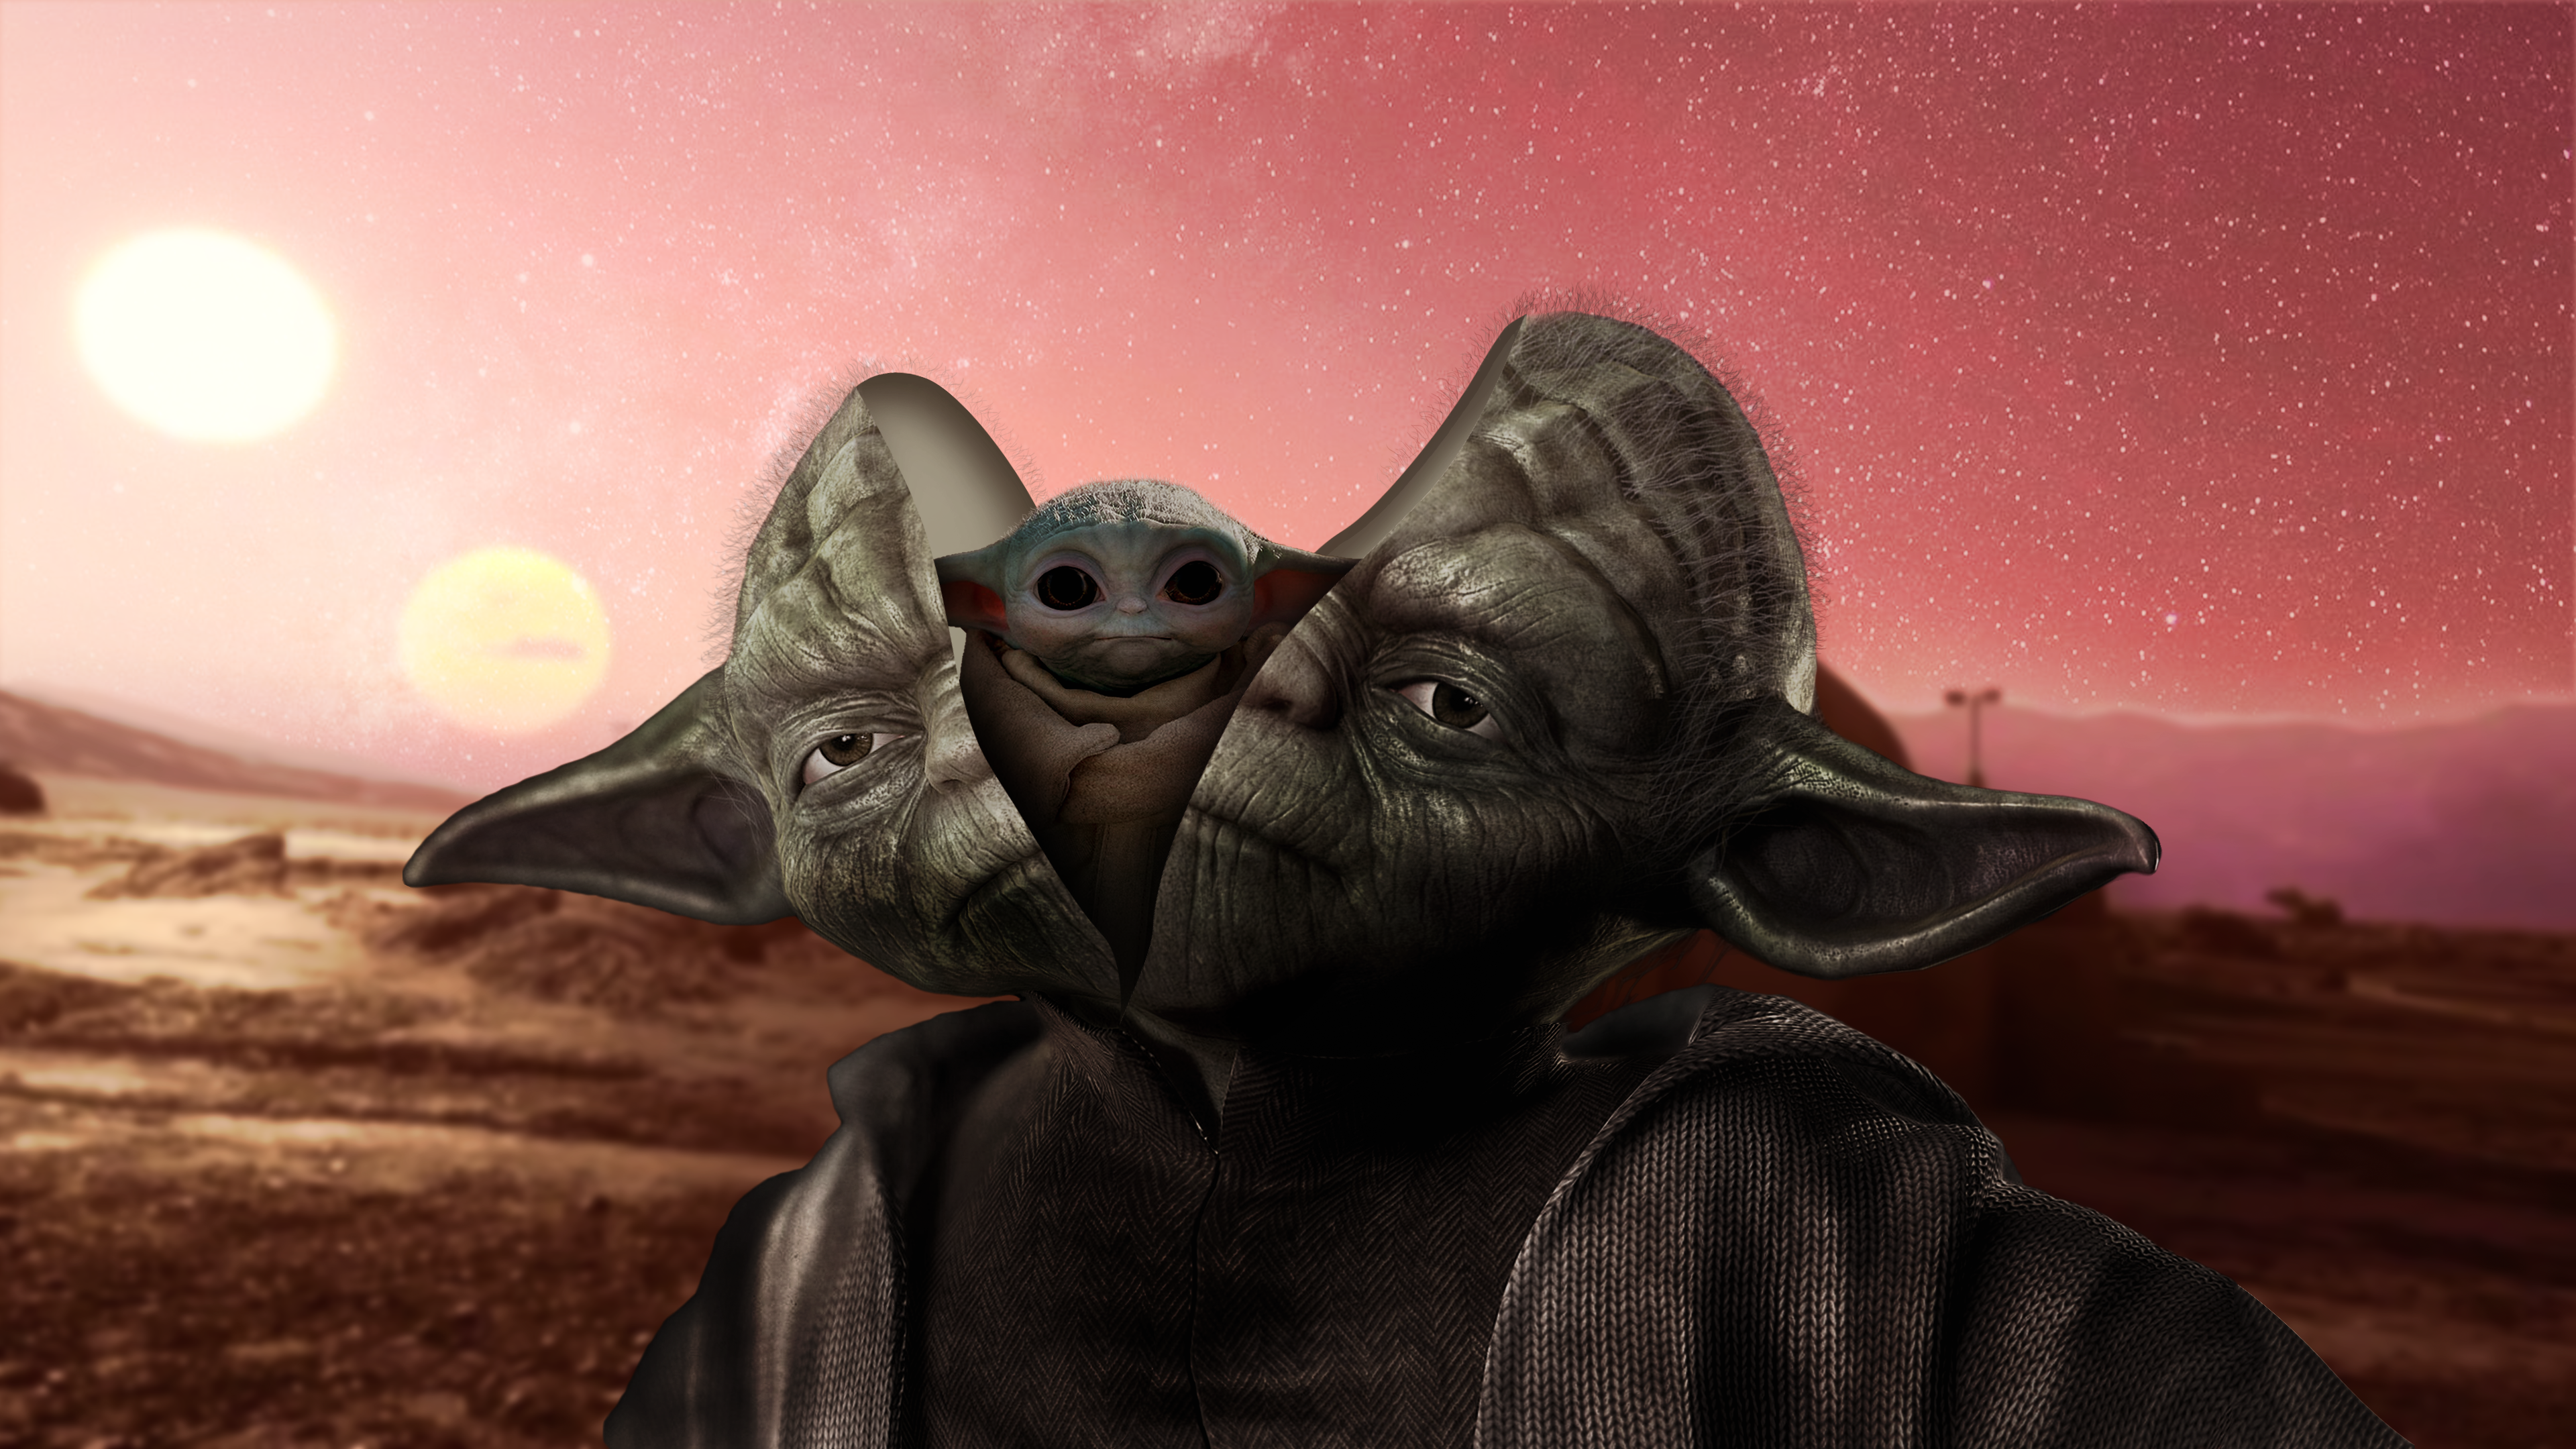 Yoda Baby Yoda Star Wars Tatooine Transformation 3840x2160